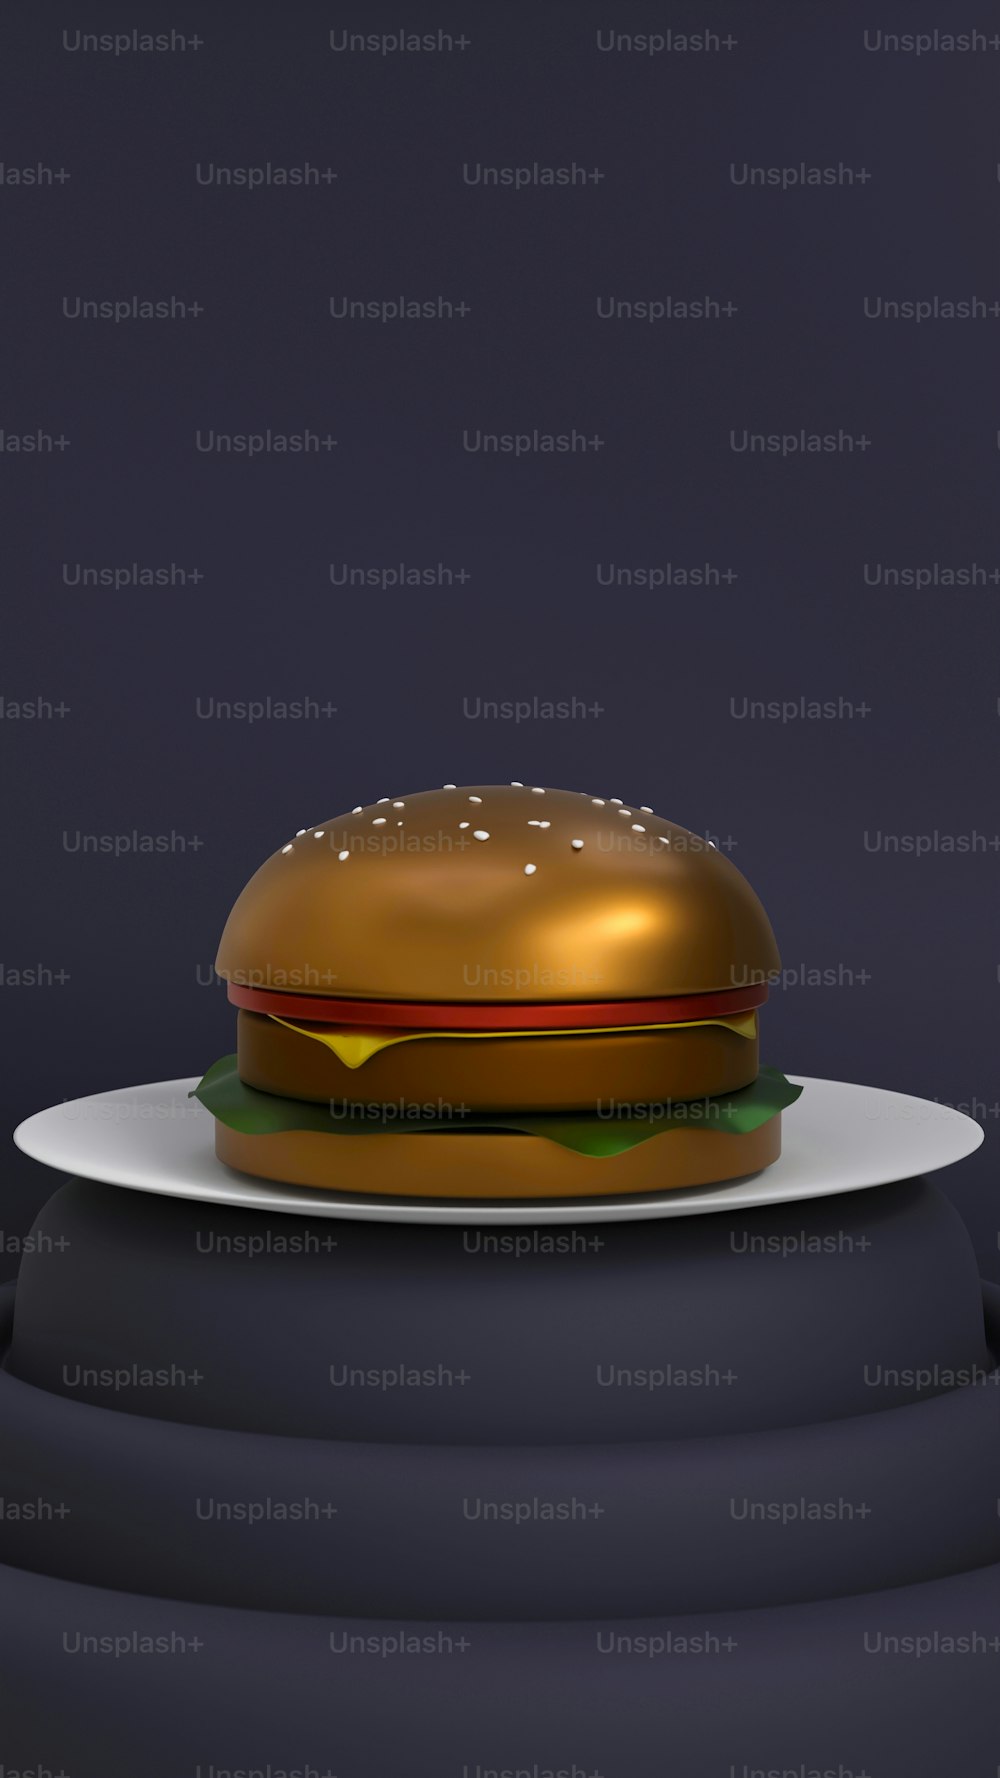 하얀 접시 위에 앉아있는 황금 햄버거